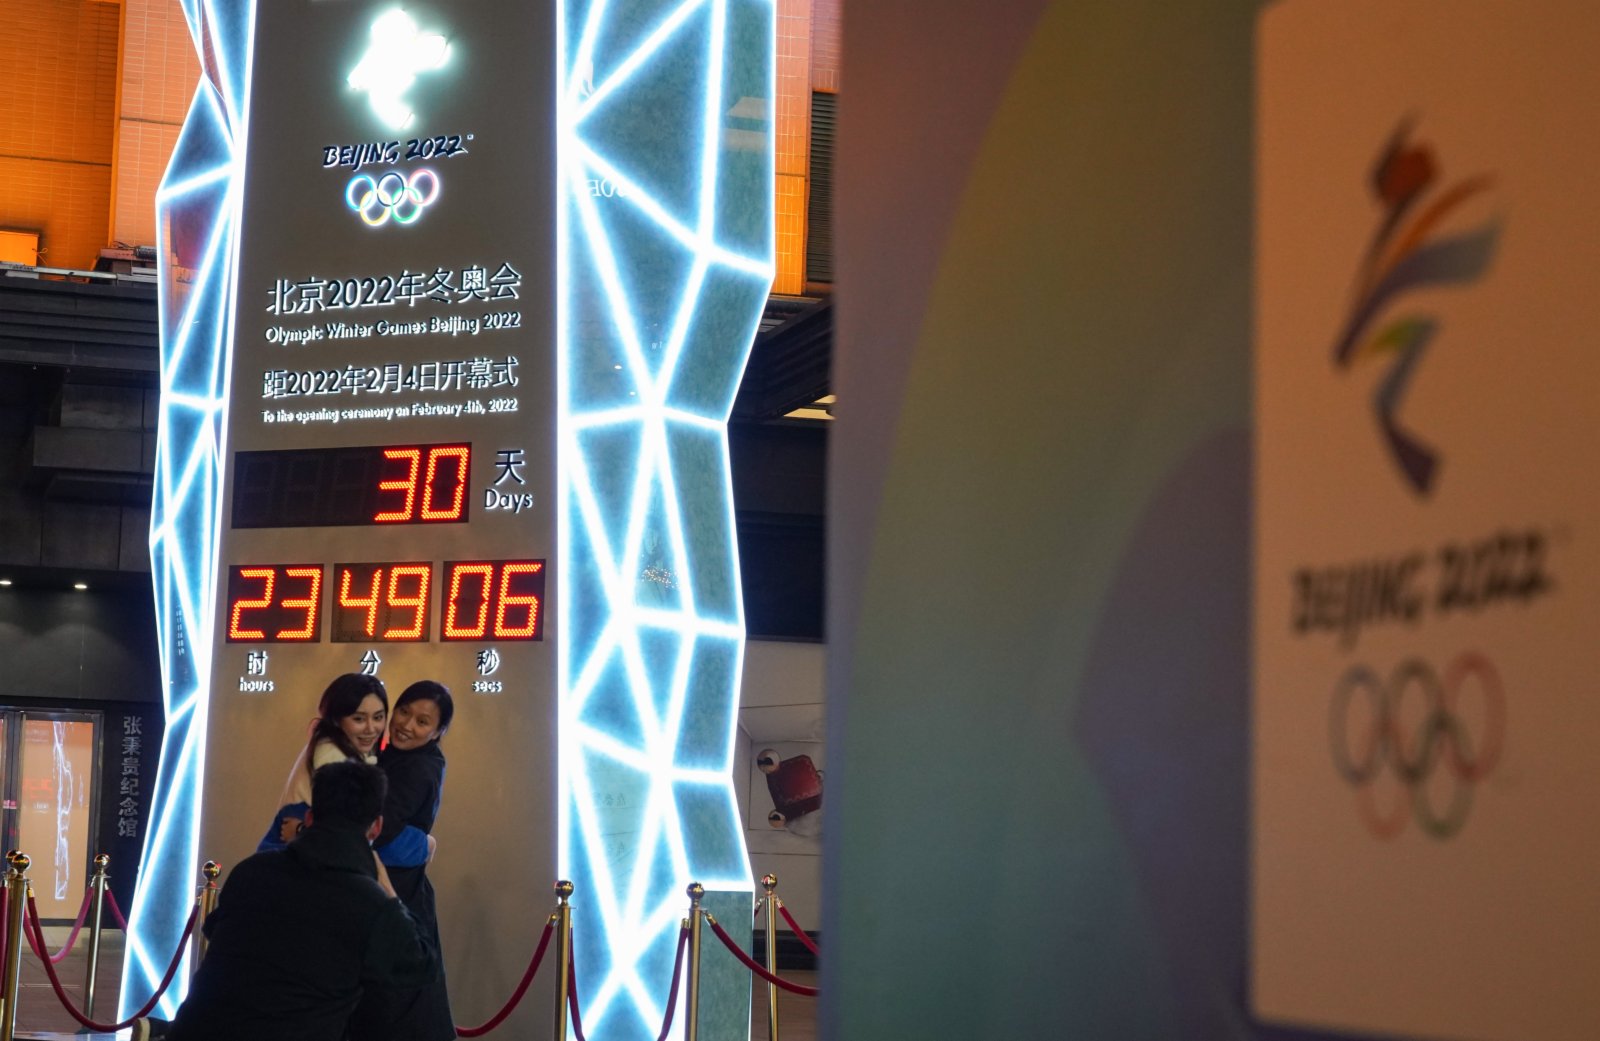 1月4日，人們在北京王府井大街的北京2022年冬奧會倒計時牌前拍照。當日，北京2022年冬奧會迎來開幕倒計時一個月（新華社）。